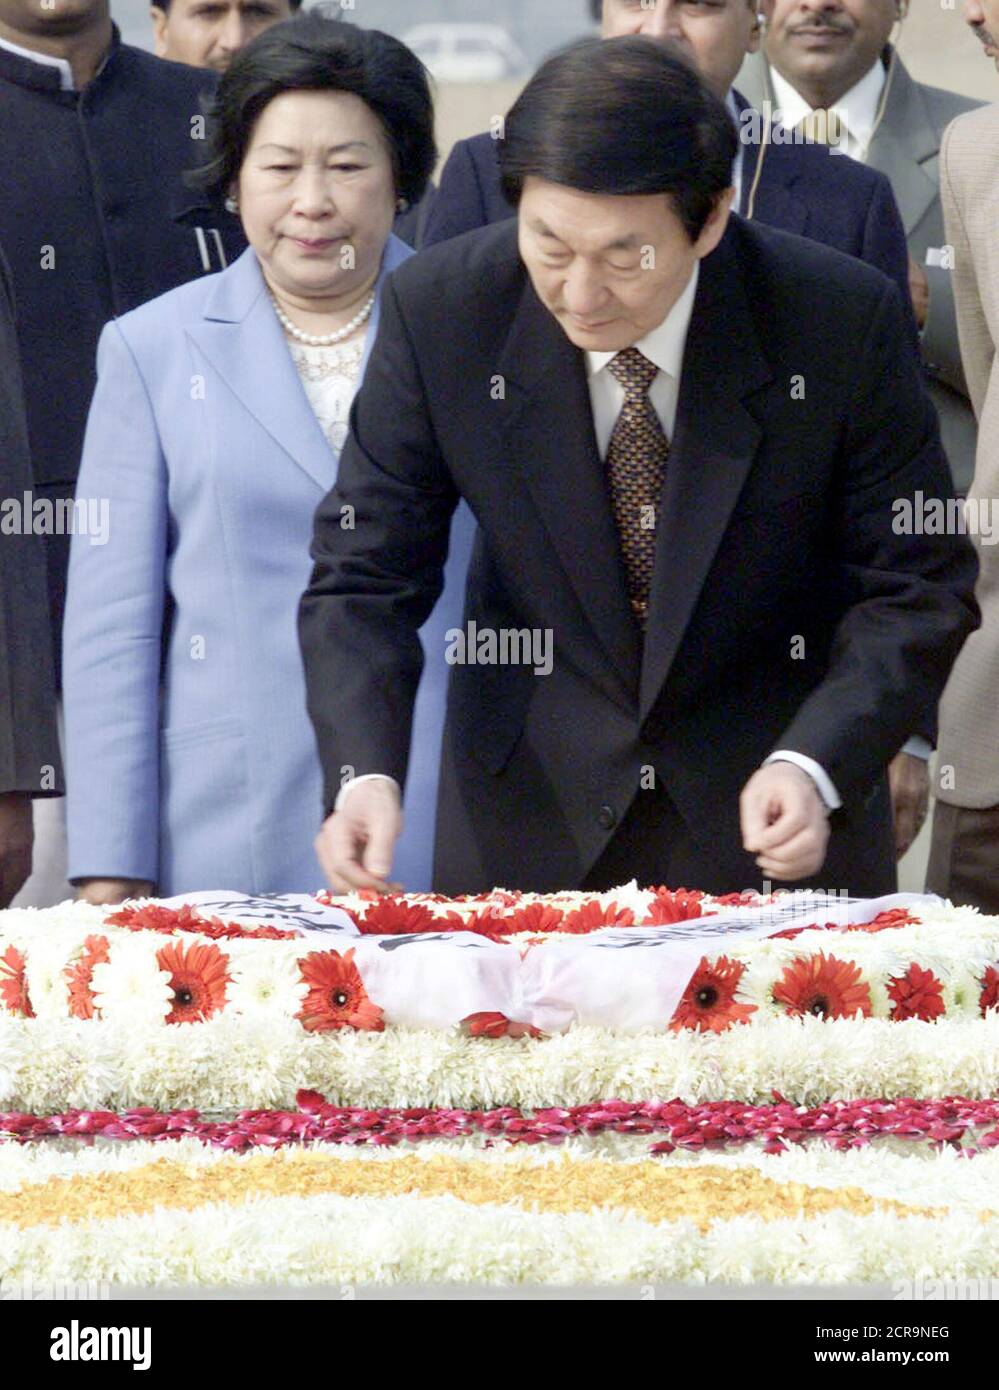 El primer ministro chino Zhu Rongji (R) ajusta la bufanda en una corona en el memorial Mahatma Gandhi en Rajghat, Nueva Delhi, el 14 de enero de 2002, mientras su esposa, la señora Lao An, mira. Zhu, el primer premier chino que visitó la India desde diciembre de 1991, ha pedido públicamente a Pakistán que muestre "máxima moderación" y es probable que presente el mismo mensaje a la India durante su visita de seis días. REUTERS/Kamal Kishore PK/DL Foto de stock